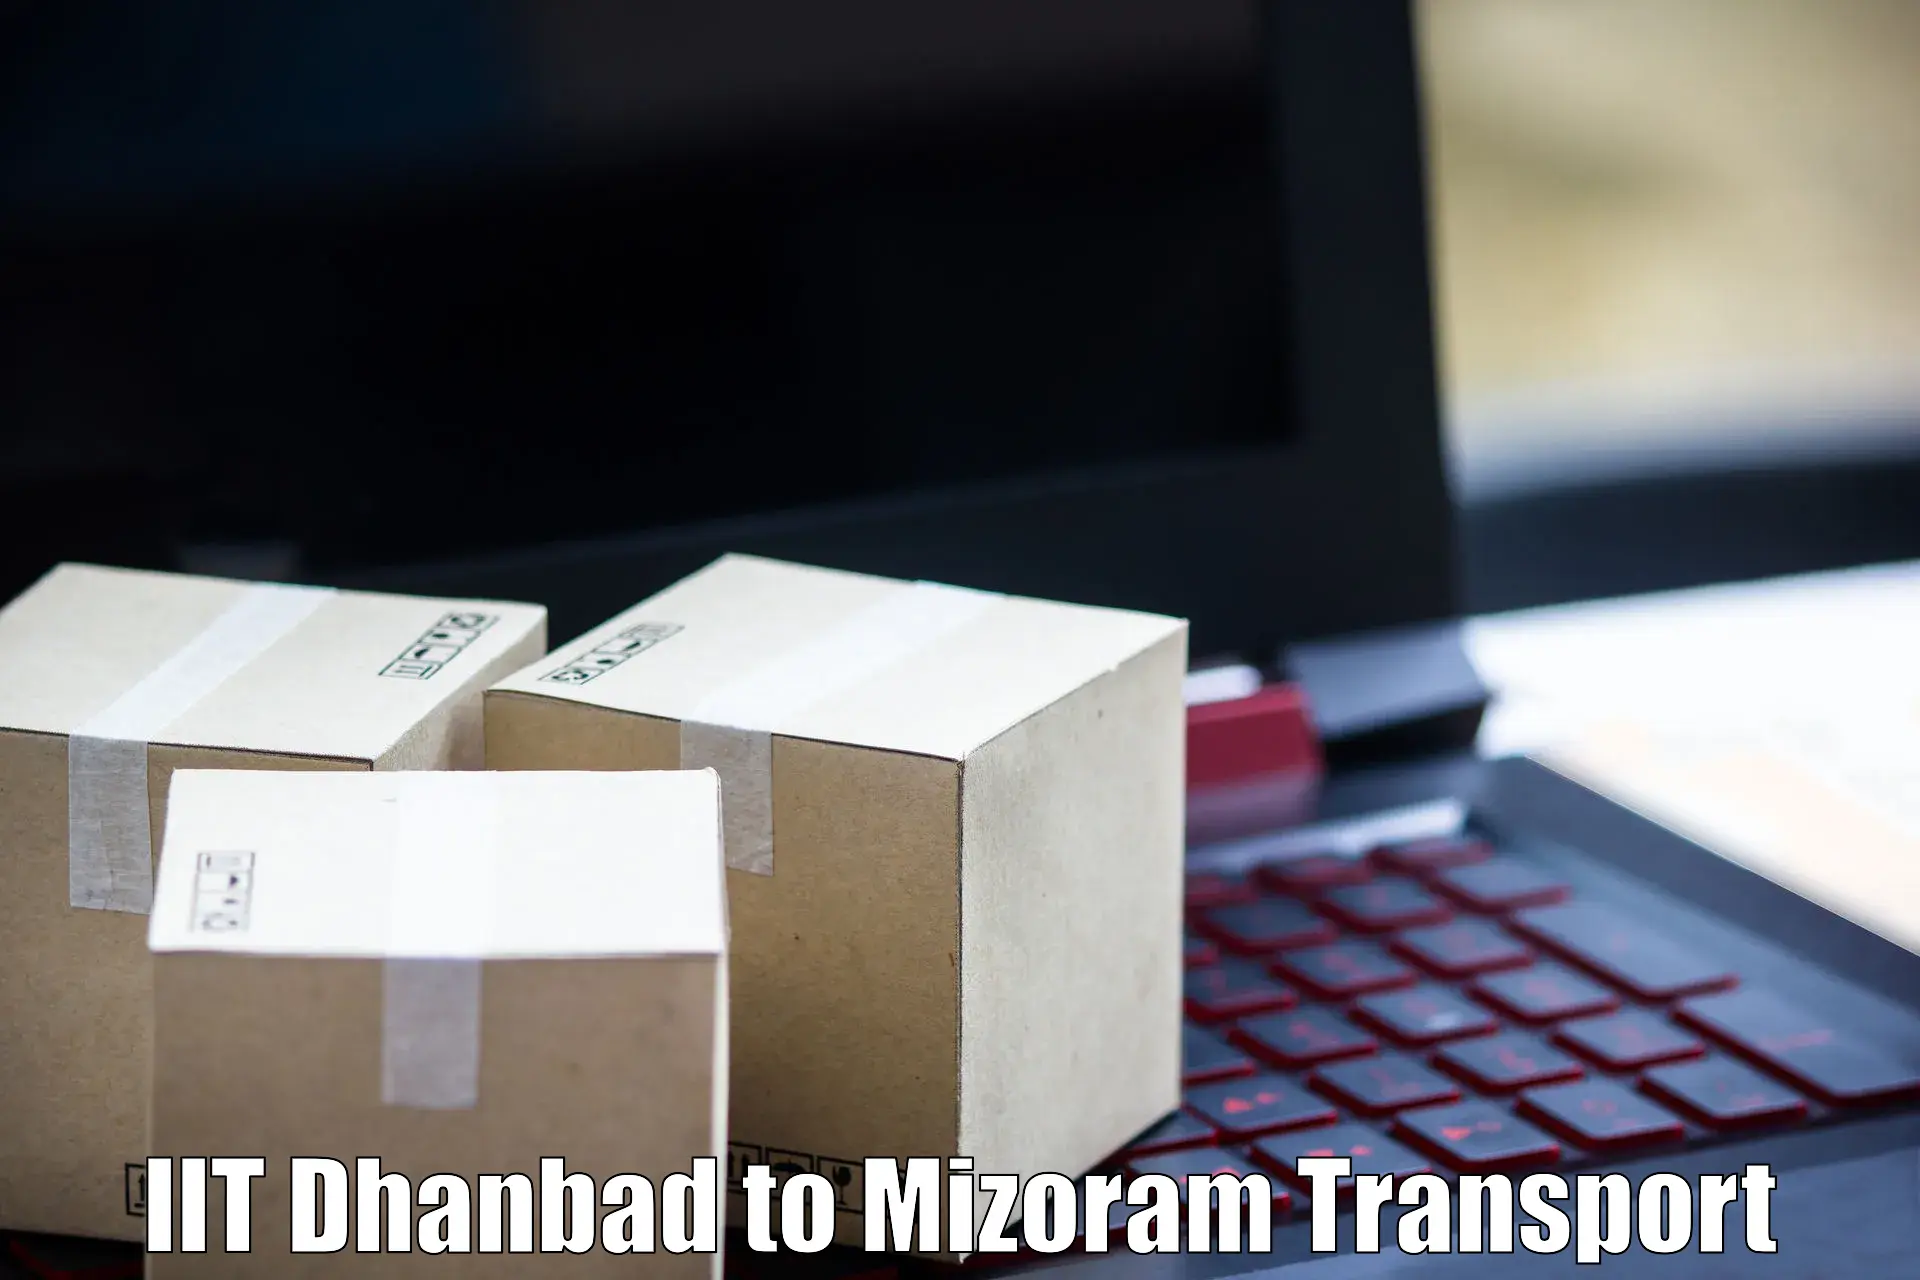 Online transport service IIT Dhanbad to Mizoram